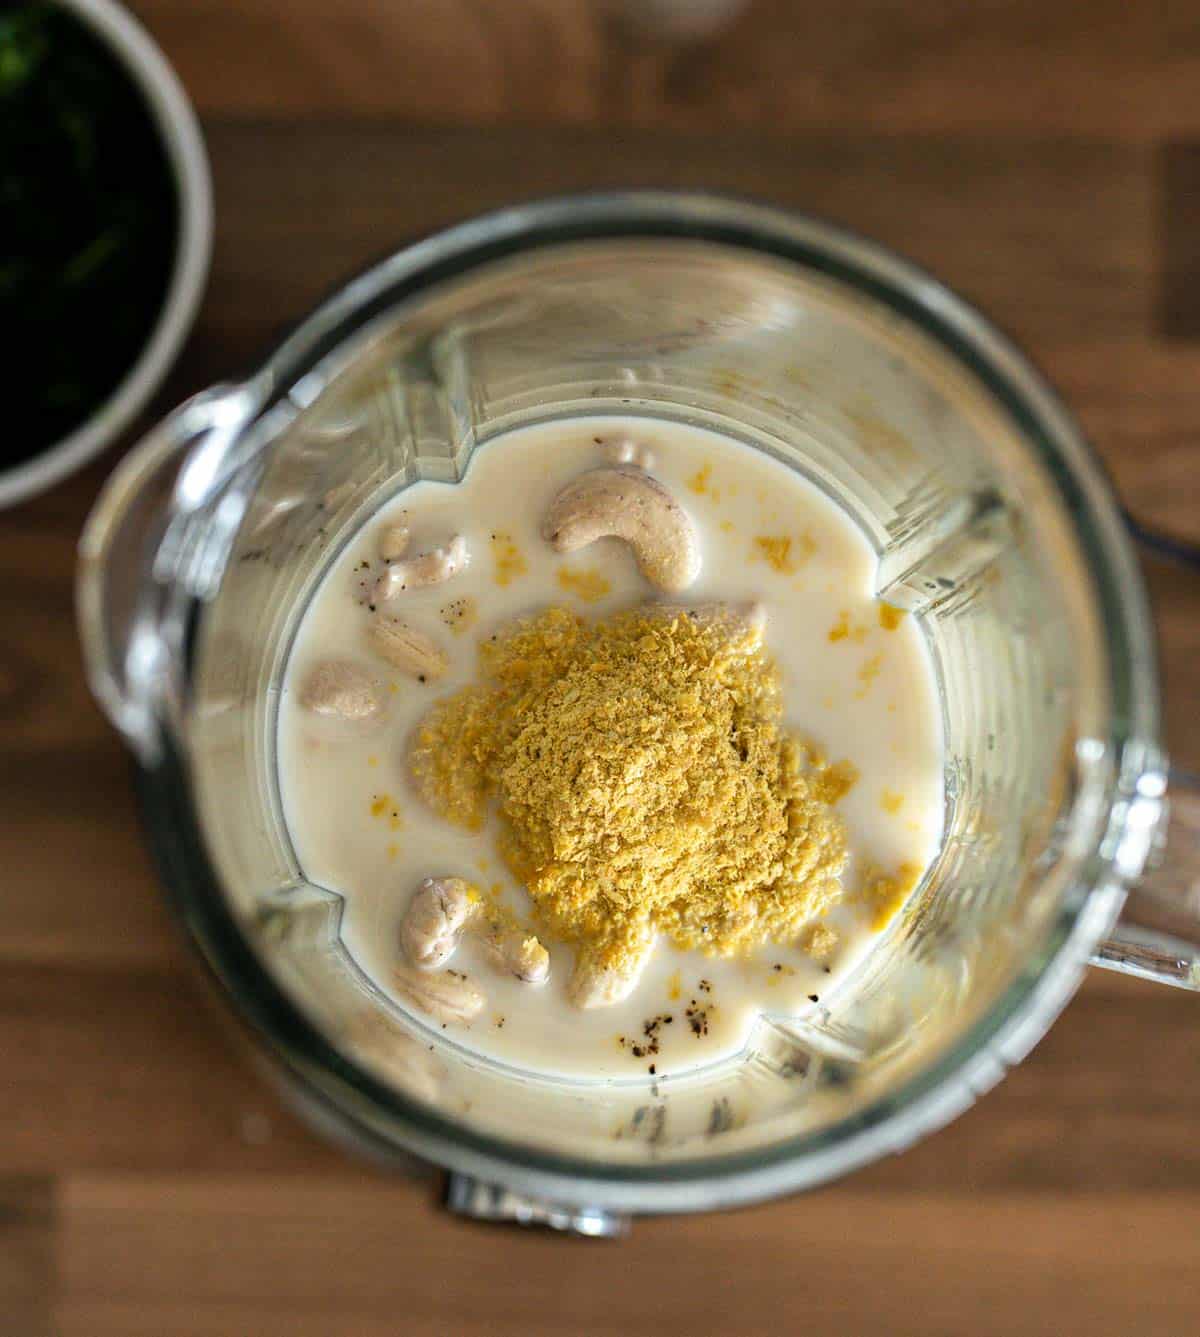 Ingredients to make vegan creamy cashew sauce in a blender.